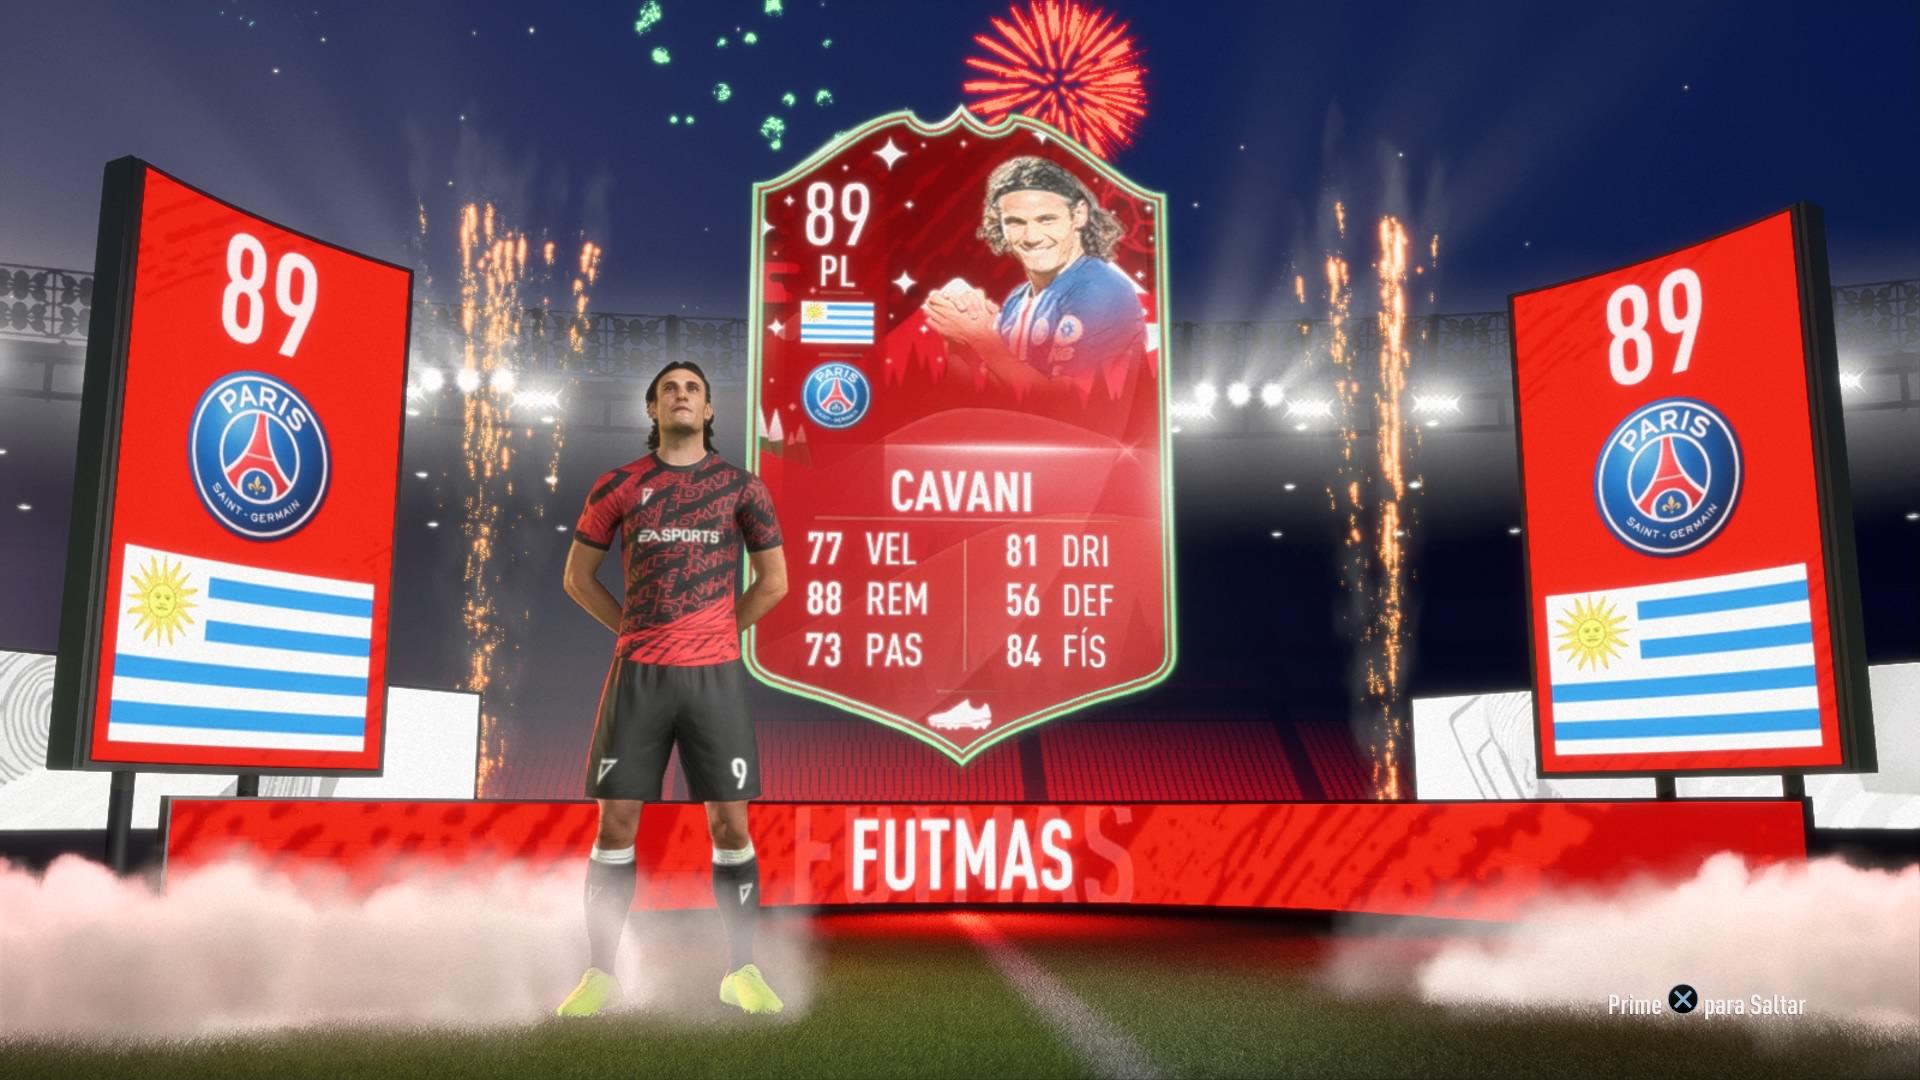 Cavani FIFA 20 Ultimate Team FUTMAS